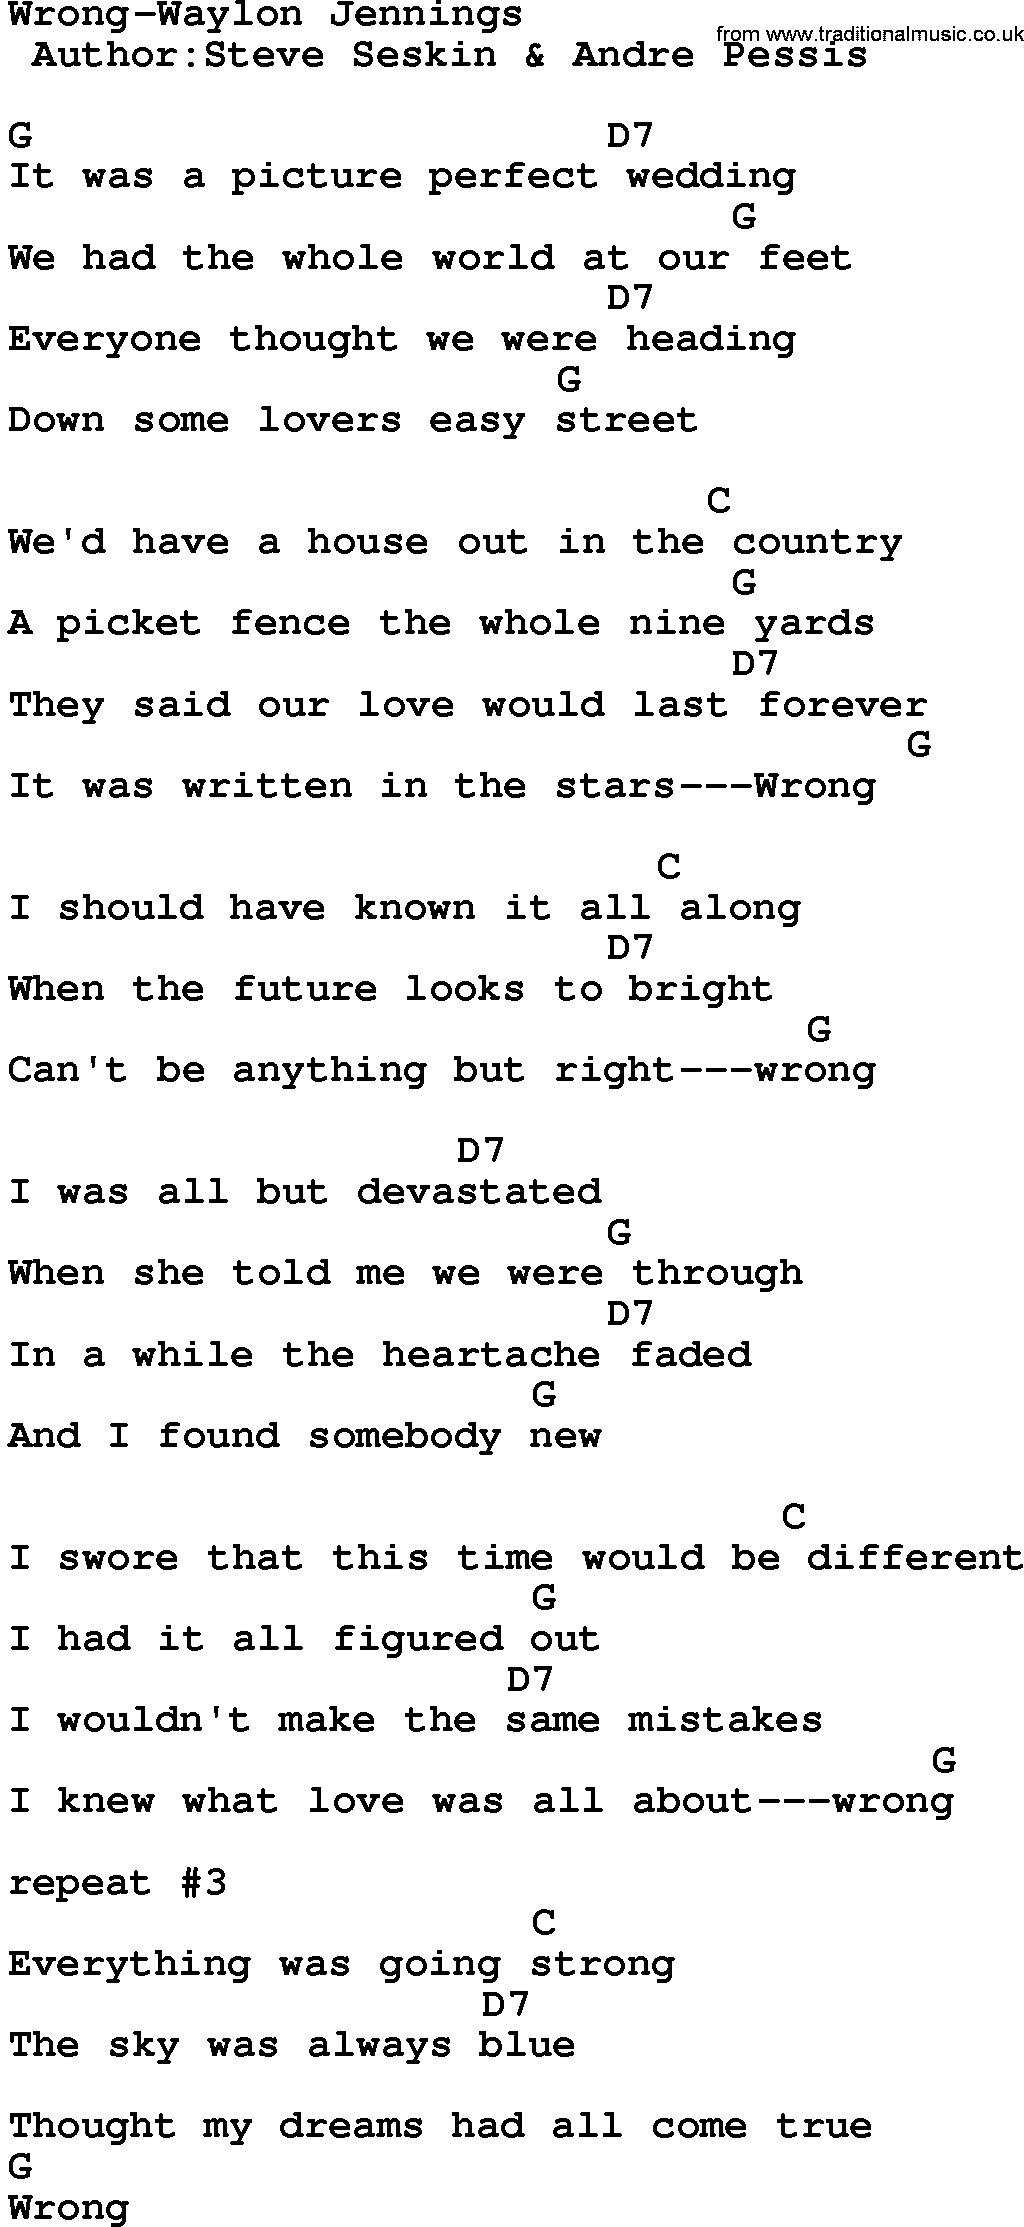 Country music song: Wrong-Waylon Jennings lyrics and chords